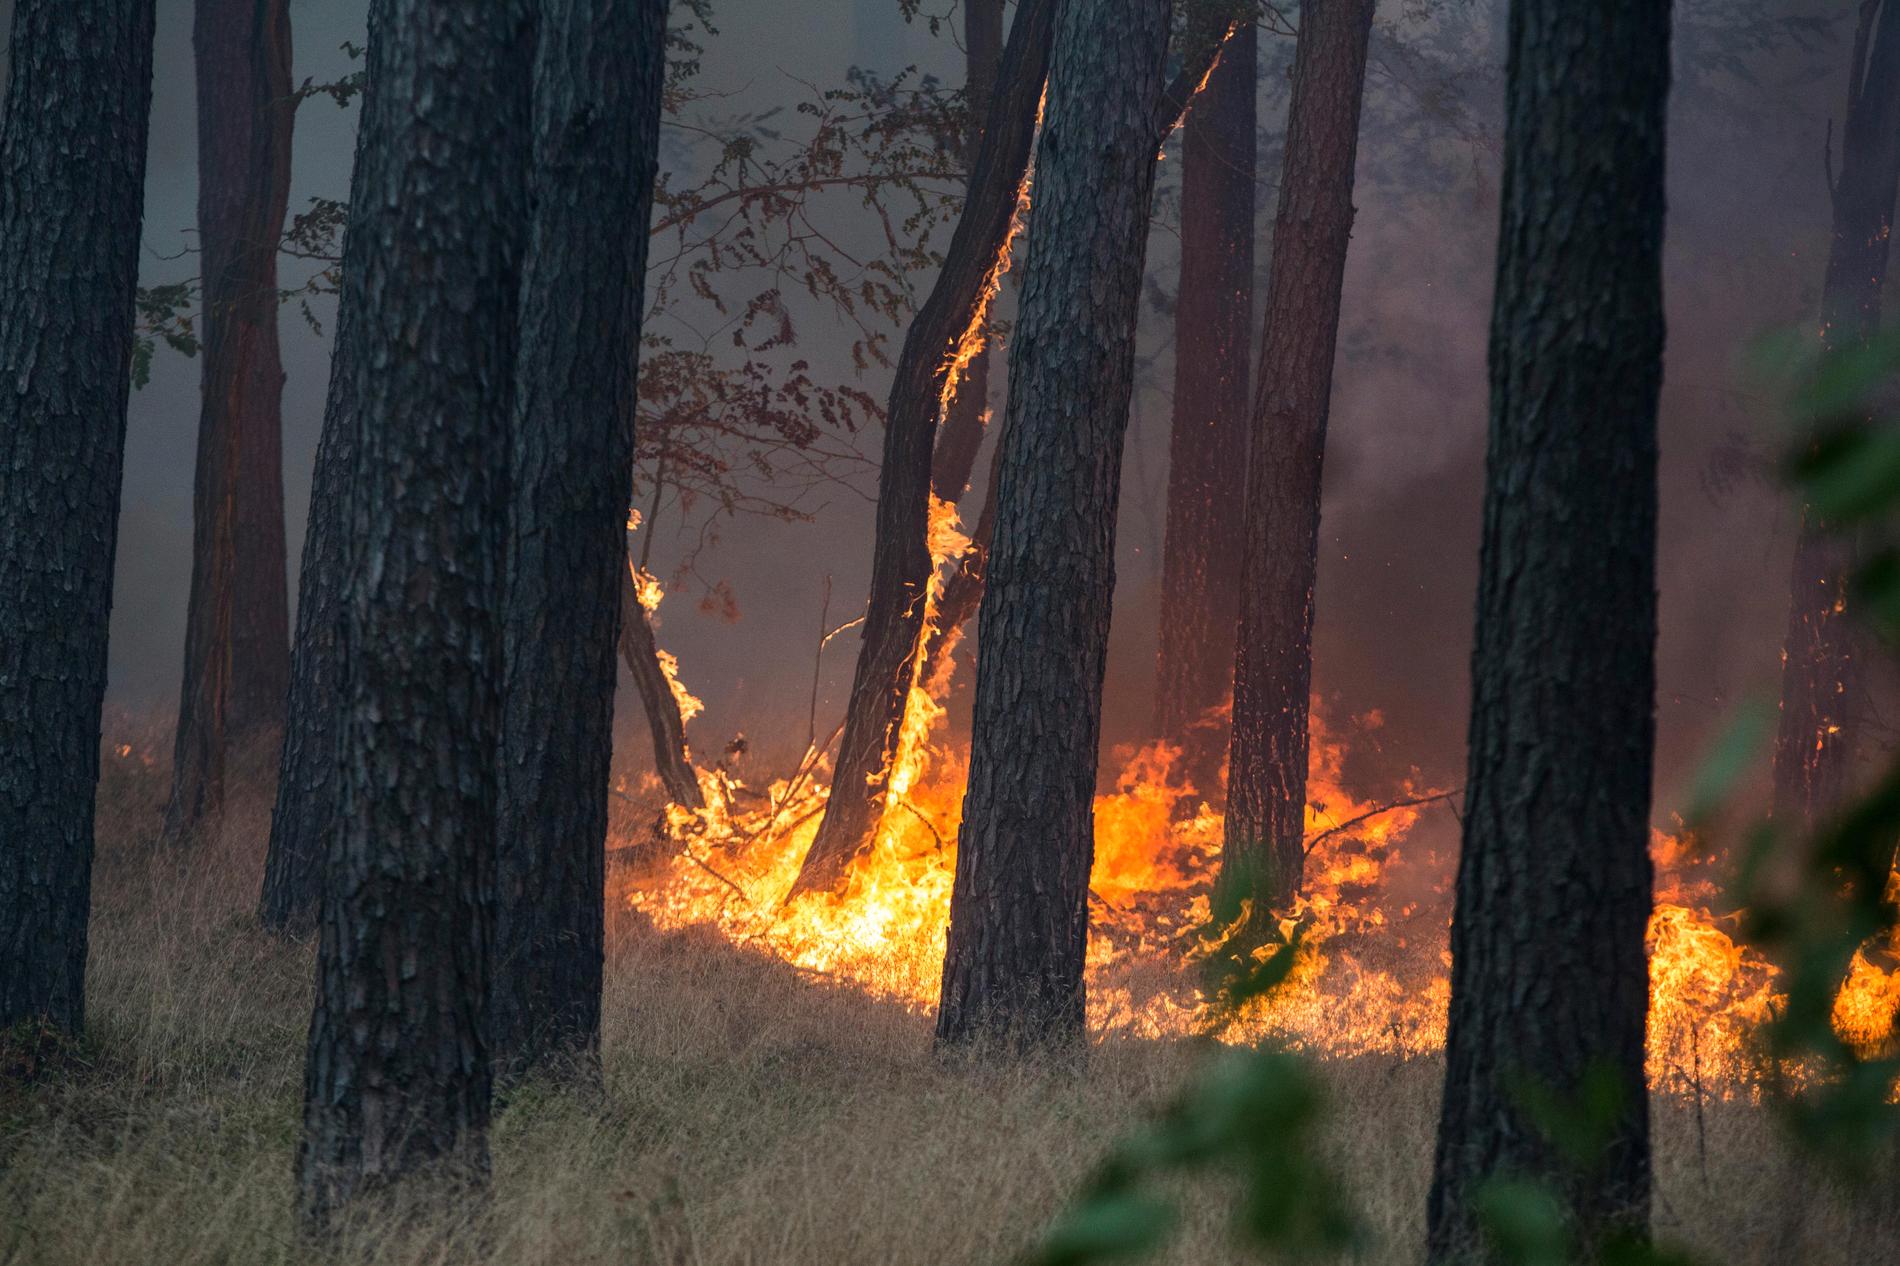 I framtiden kan kanske gigantiska brandfiltar skydda hus vid exempelvis skogsbränder. Arkivbild.